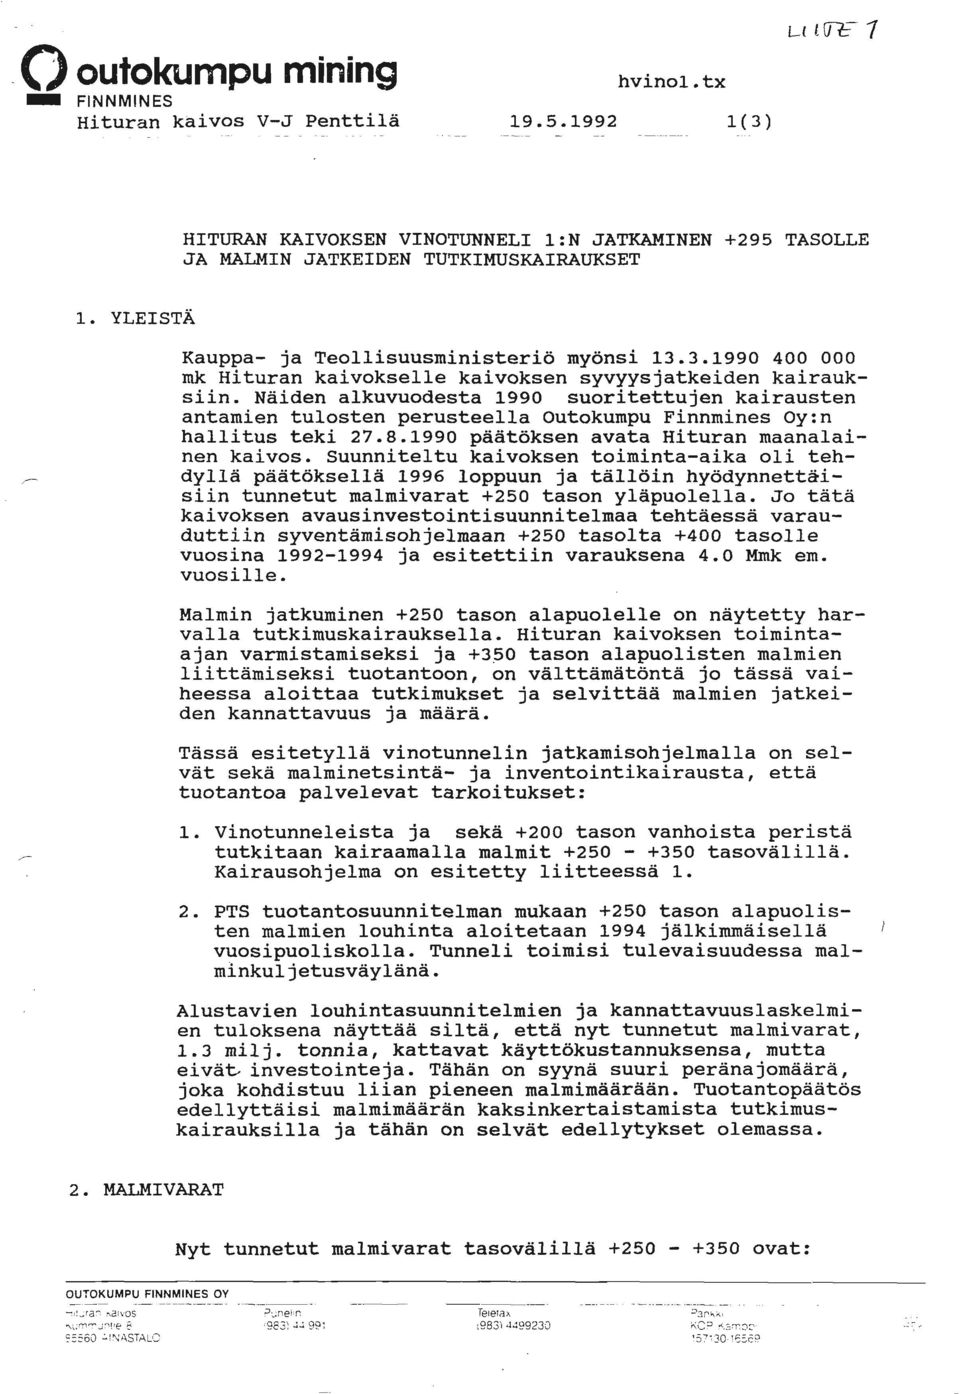 Näiden alkuvuodesta 1990 suoritettujen kairausten antamien tulosten perusteella Outokumpu Finnmines Oy:n hallitus teki 27.8.1990 päätöksen avata Hituran maanalainen kaivos.